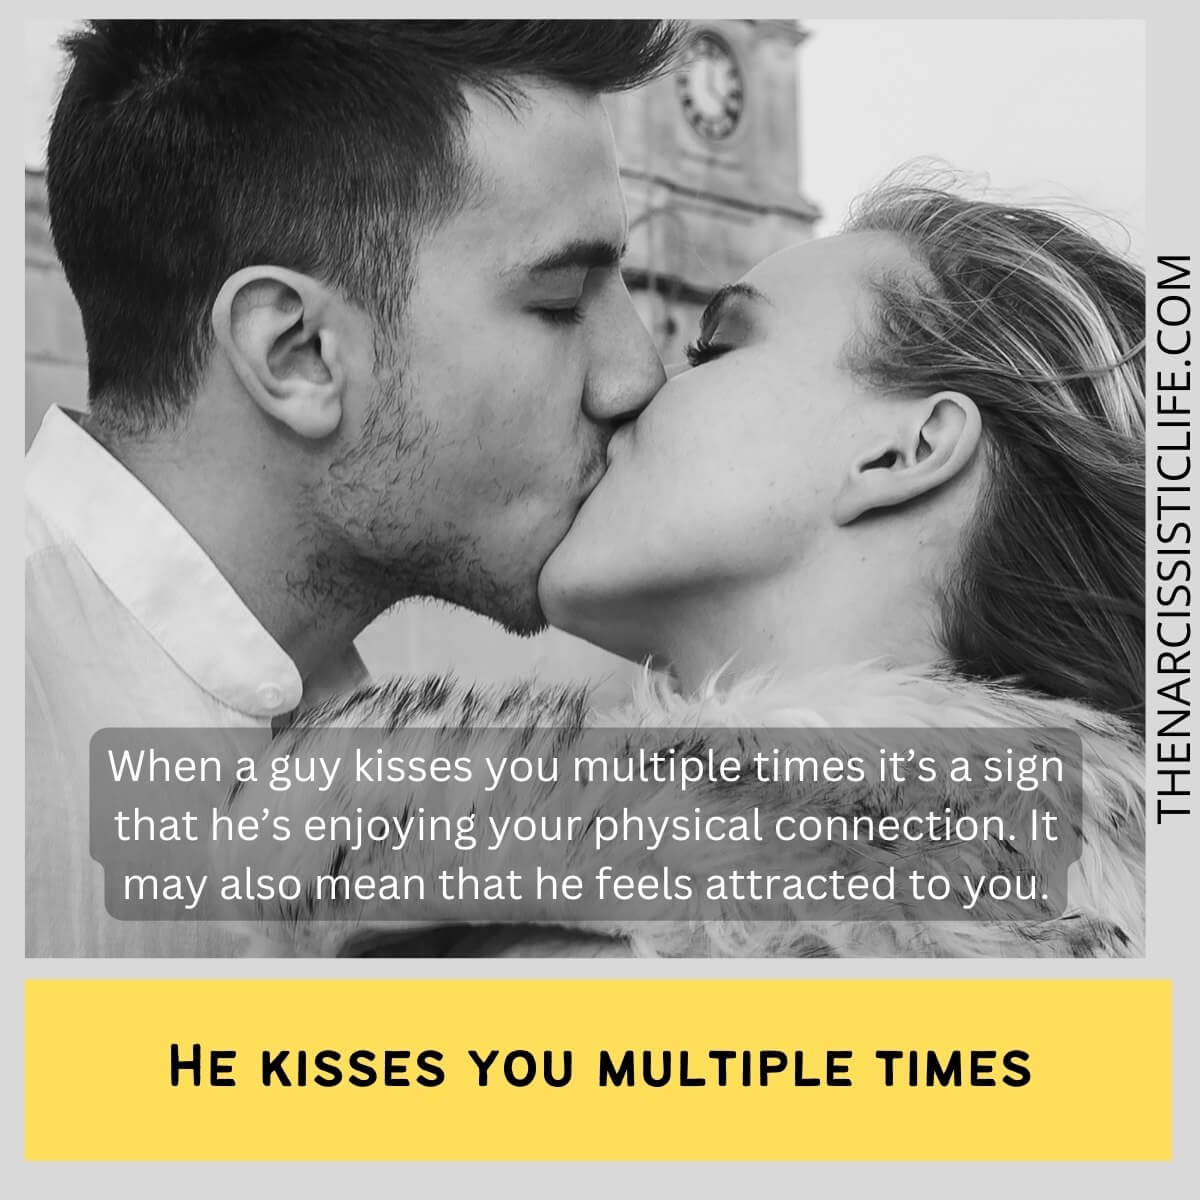 Cosa significa quando un ragazzo ti bacia più volte?